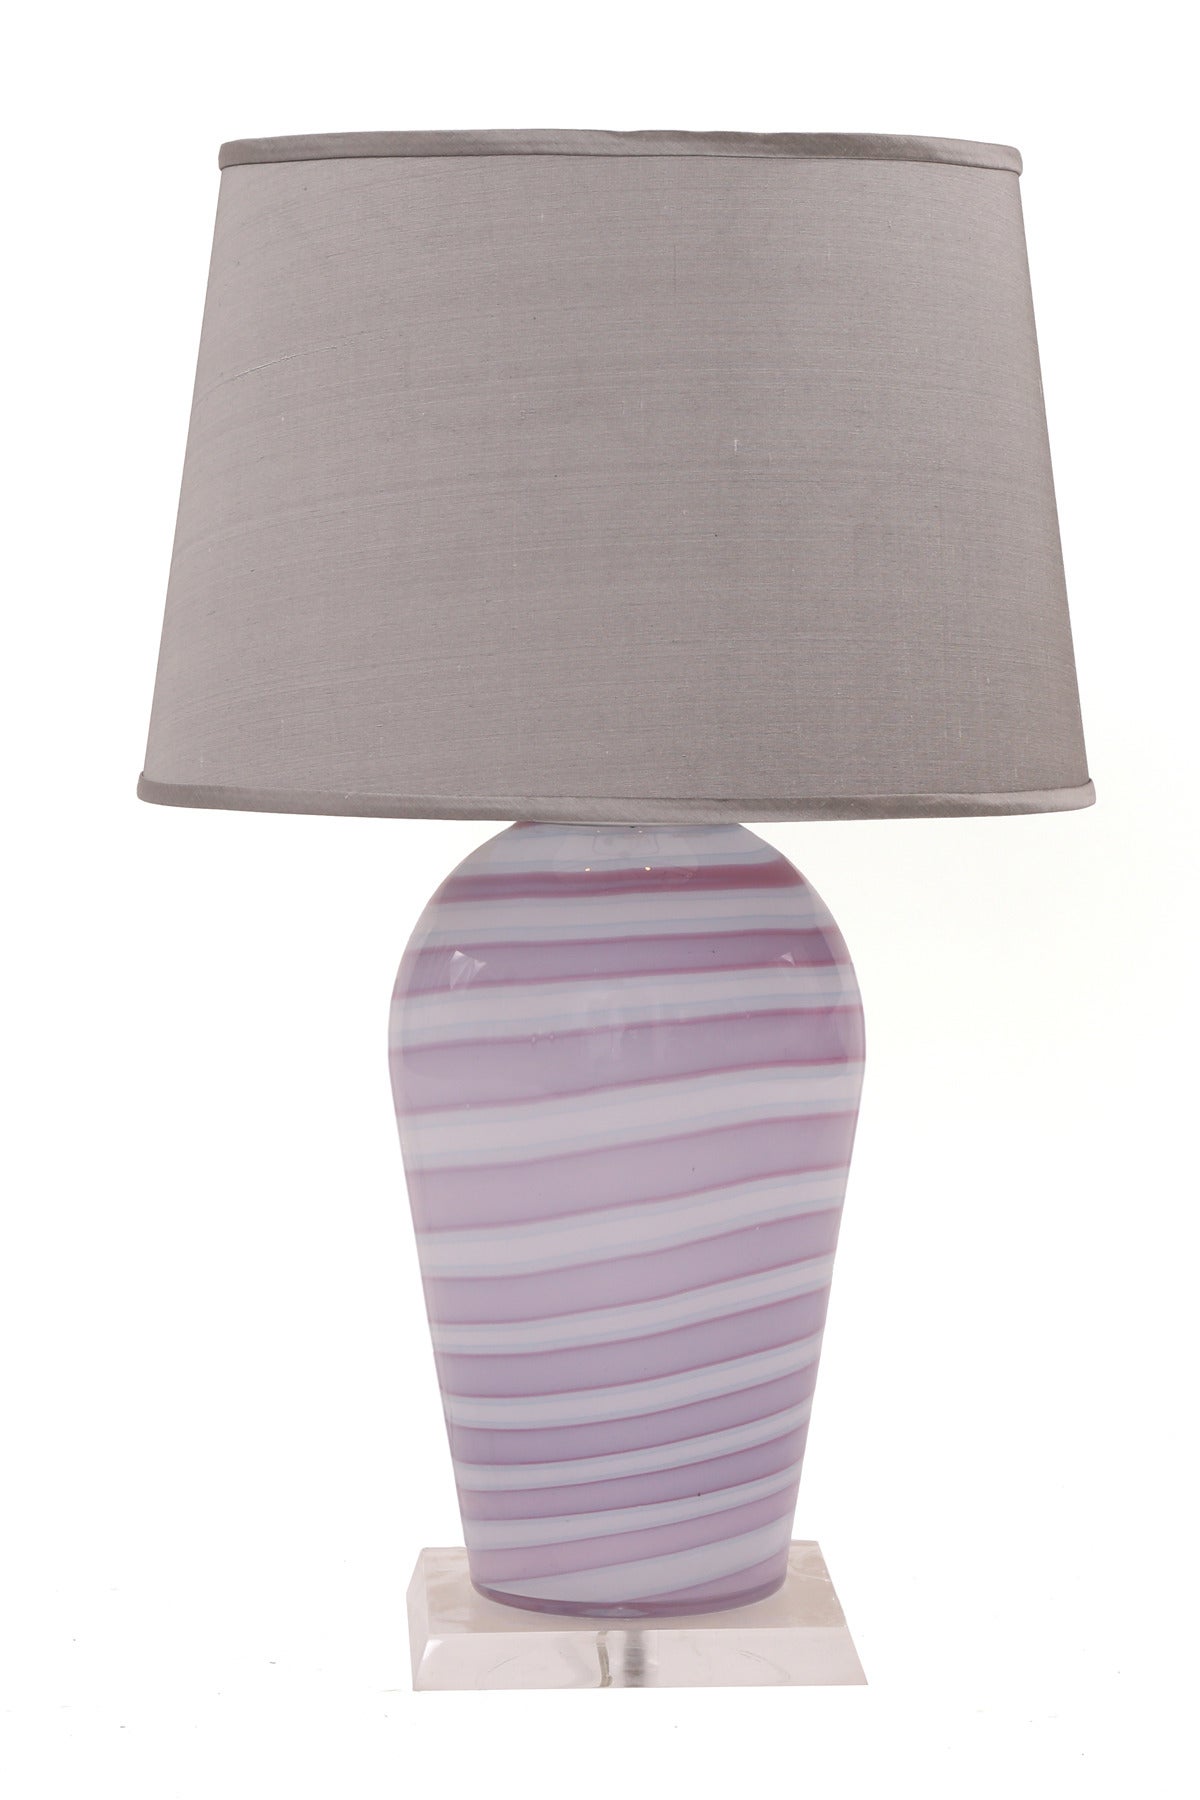 Ein Paar Tischlampen aus Murano-Glas und Lucit aus Italien, ca. Anfang der 1970er Jahre. Diese ungewöhnlichen Exemplare sind in Violett- und Grautönen gehalten und stehen auf quadratischen Sockeln aus Lucit. Die Messung bis zur Oberkante des Sockels